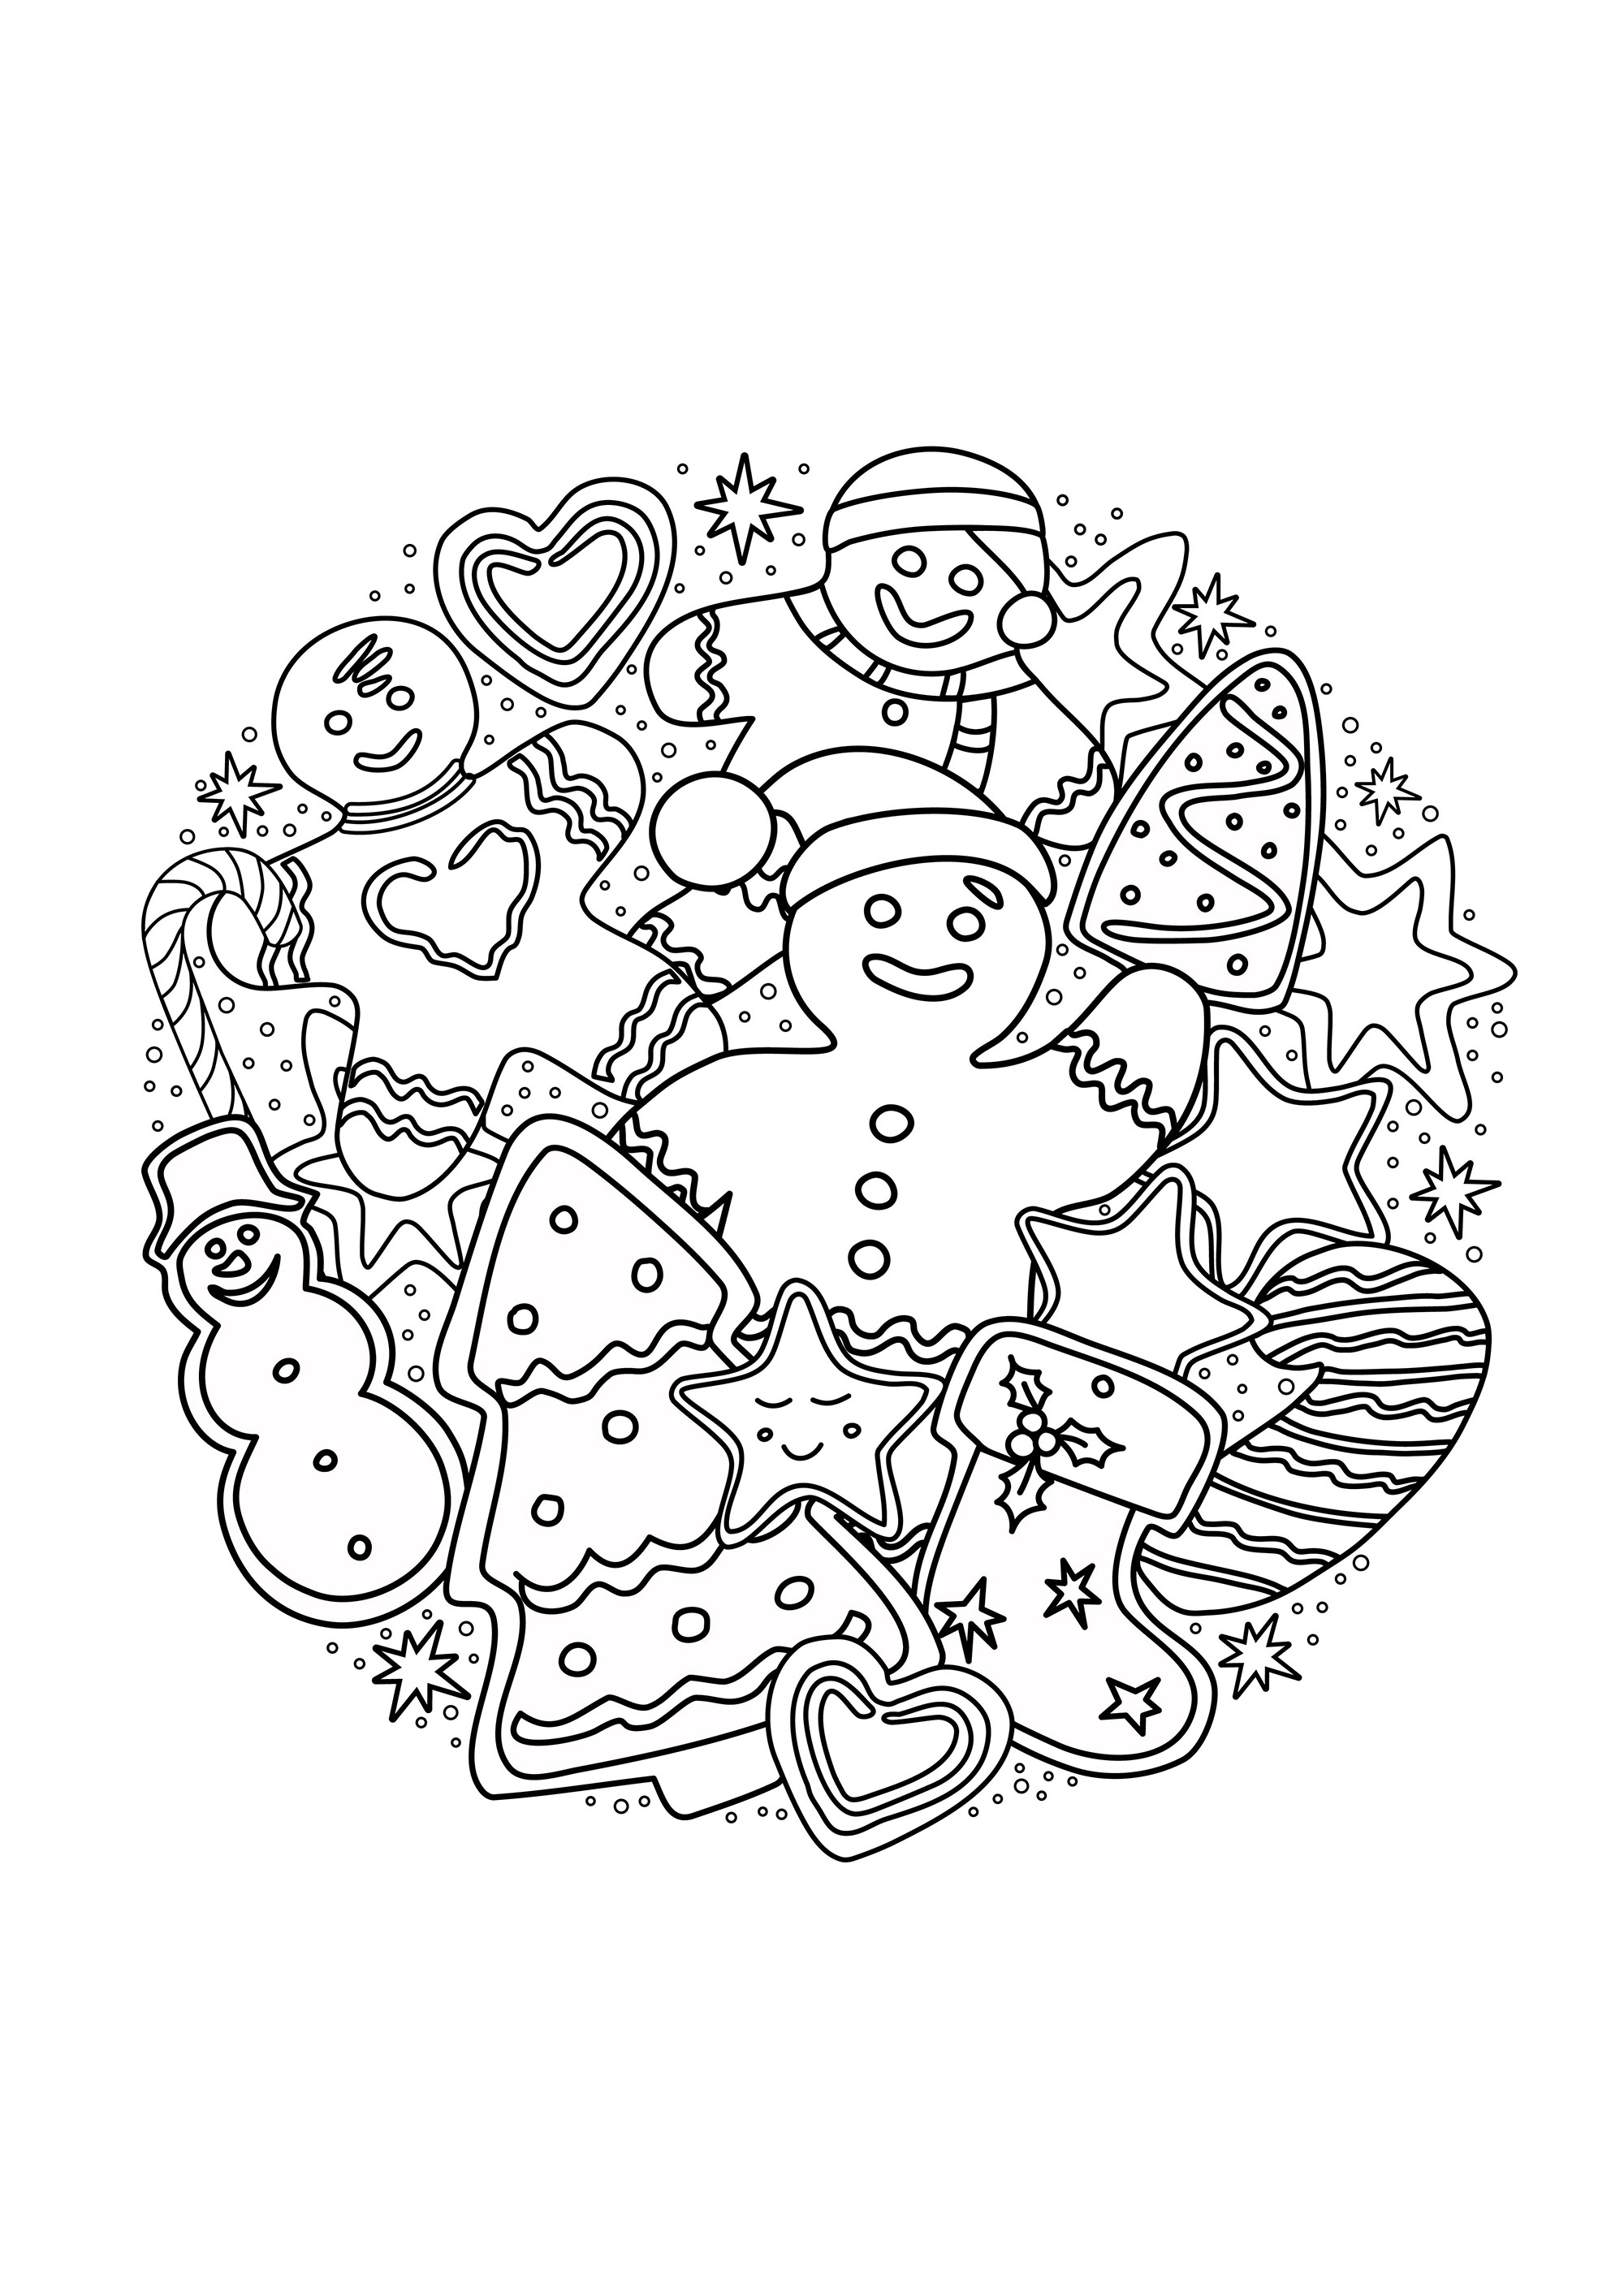 Omini di pan di zenzero e dolci che rappresentano alberi di Natale, pupazzi di neve, dolcetti e caramelle ...